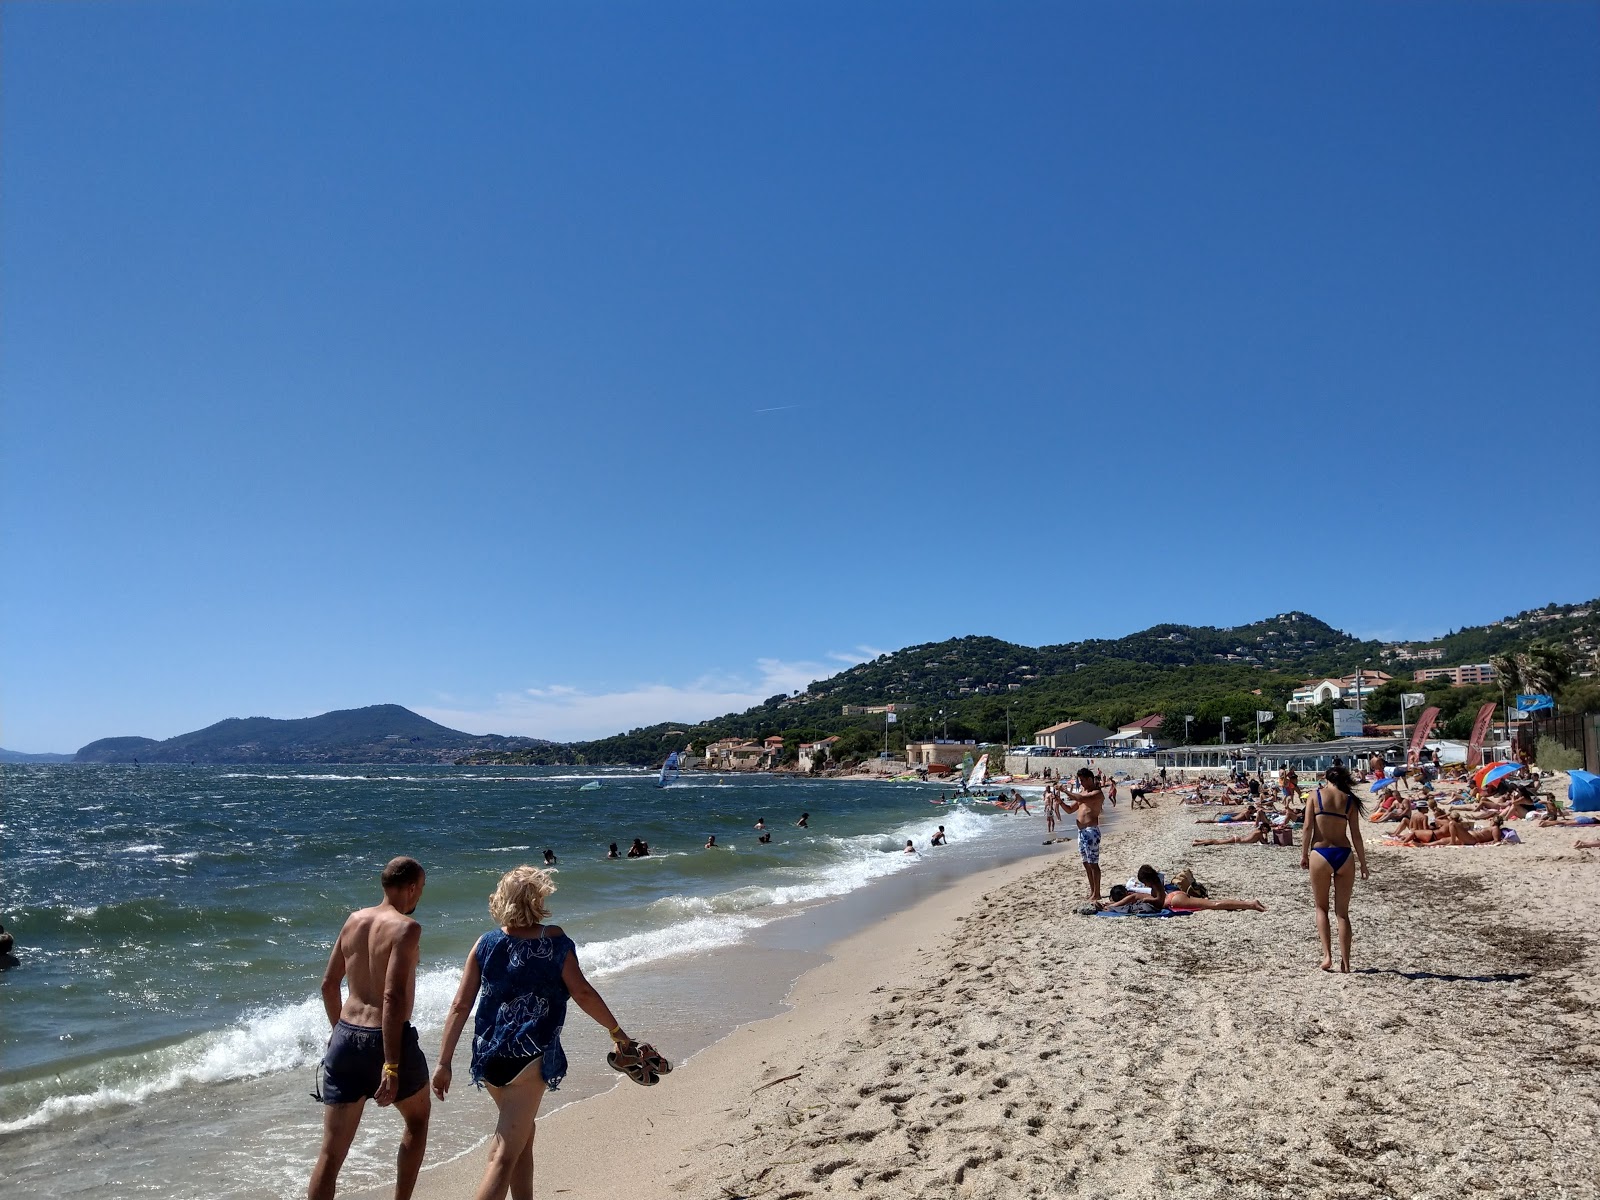 Fotografie cu Plaja Almanarre - locul popular printre cunoscătorii de relaxare